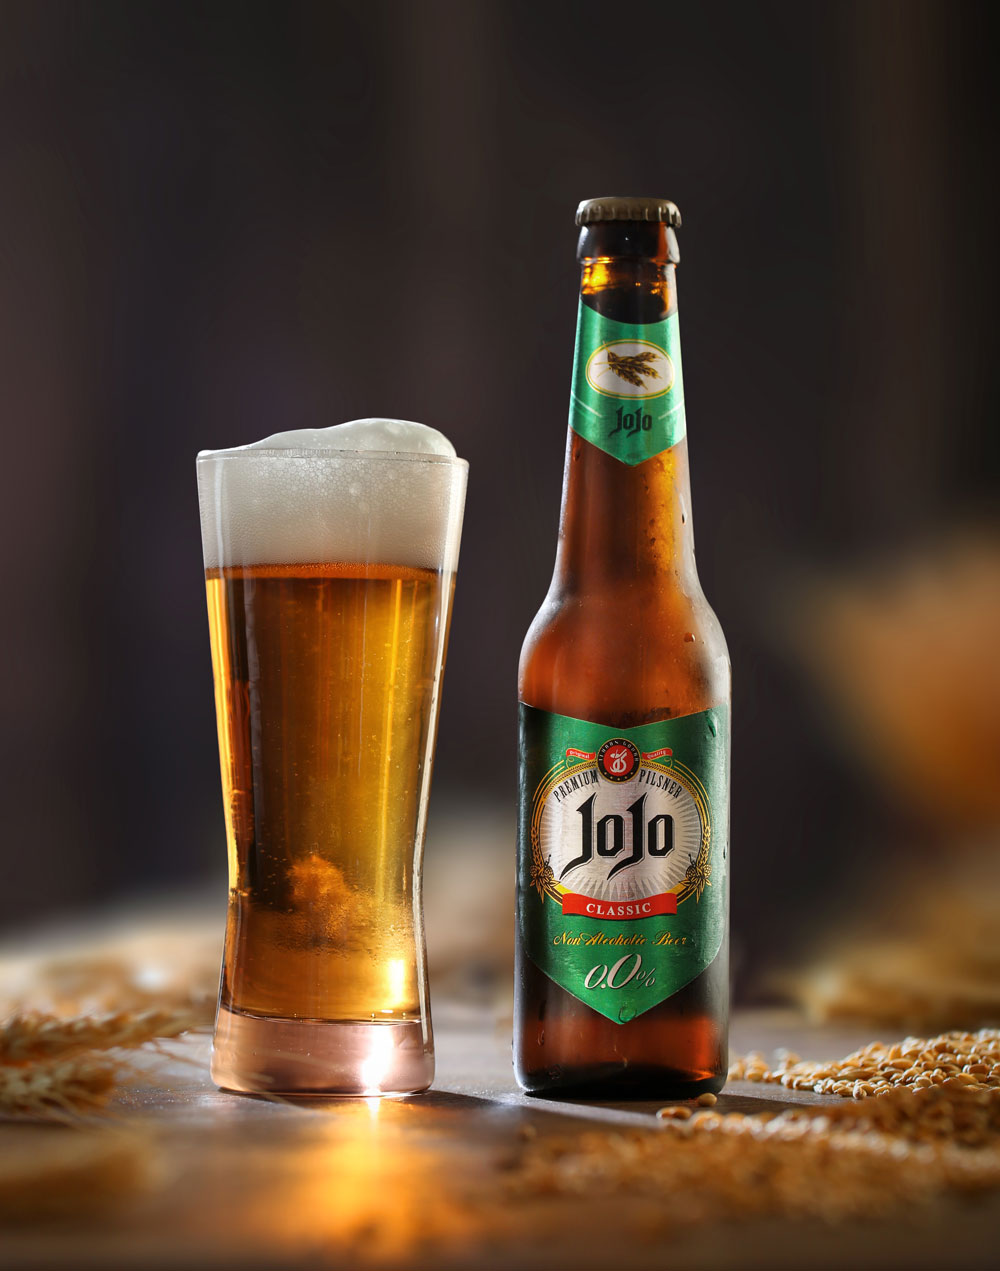 یک لیوان آبجو با کف مناسب در کنار یک شیشه ماءالشعیر جوجو - راز ماندگاری کف آبجو